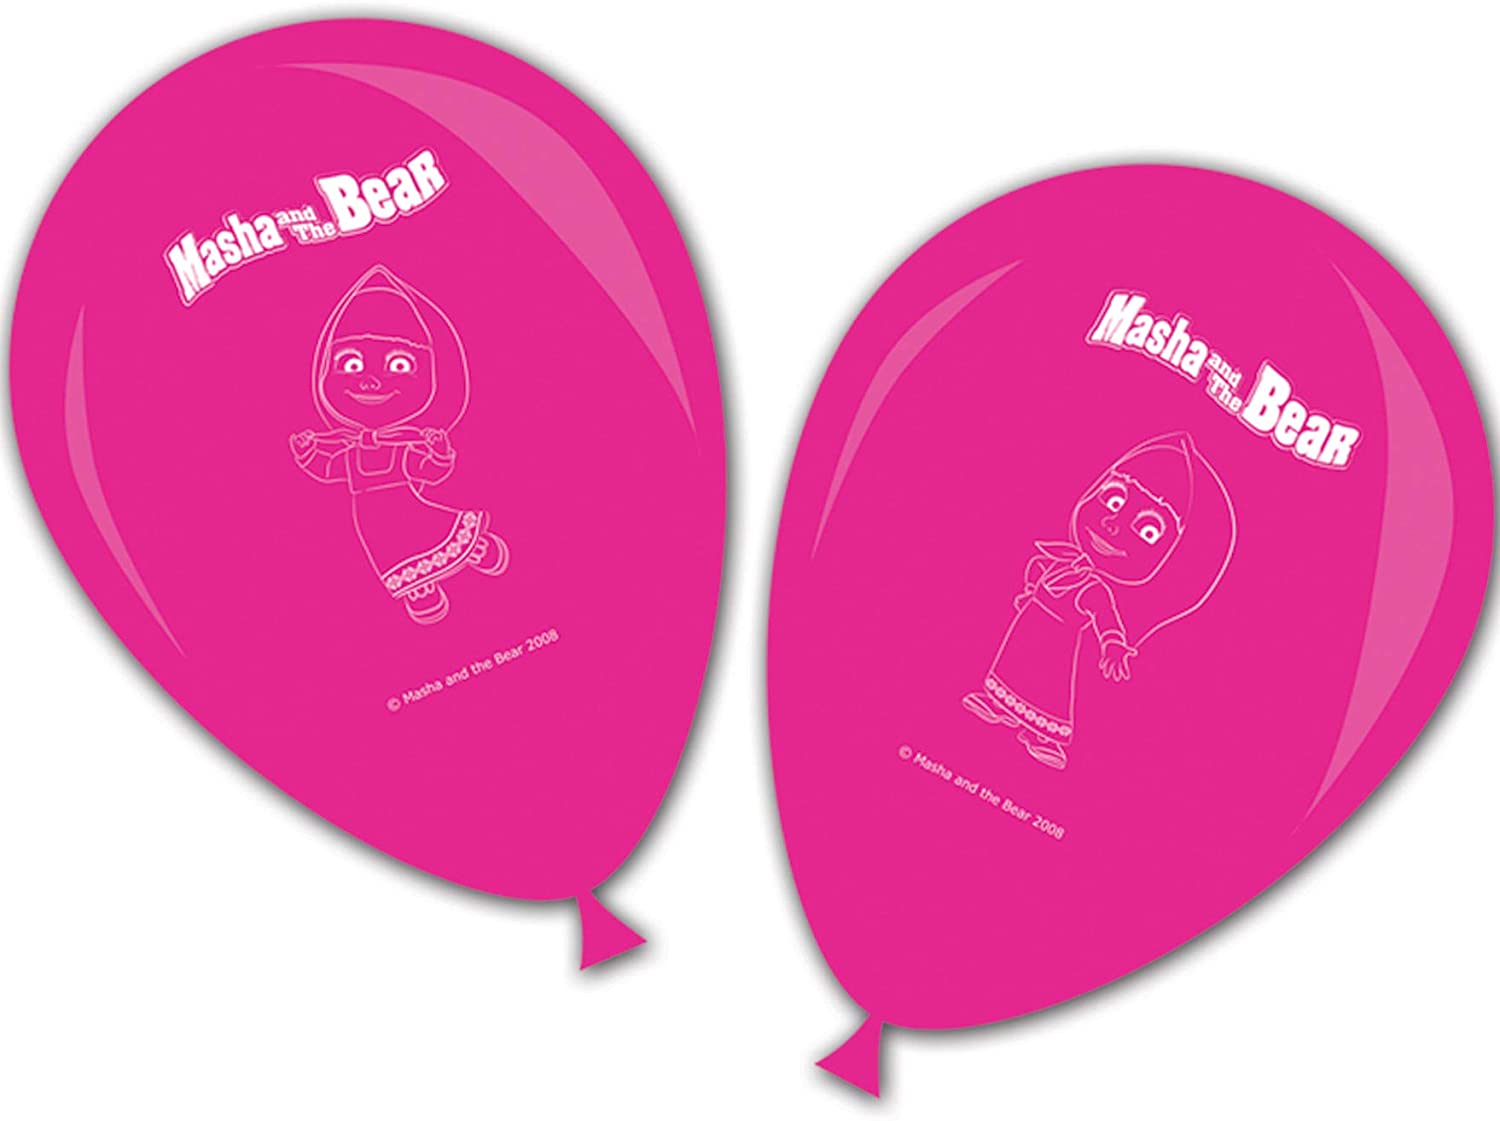 8 ballons Masha et Michka - Anniversaire Fille/Masha et Michka